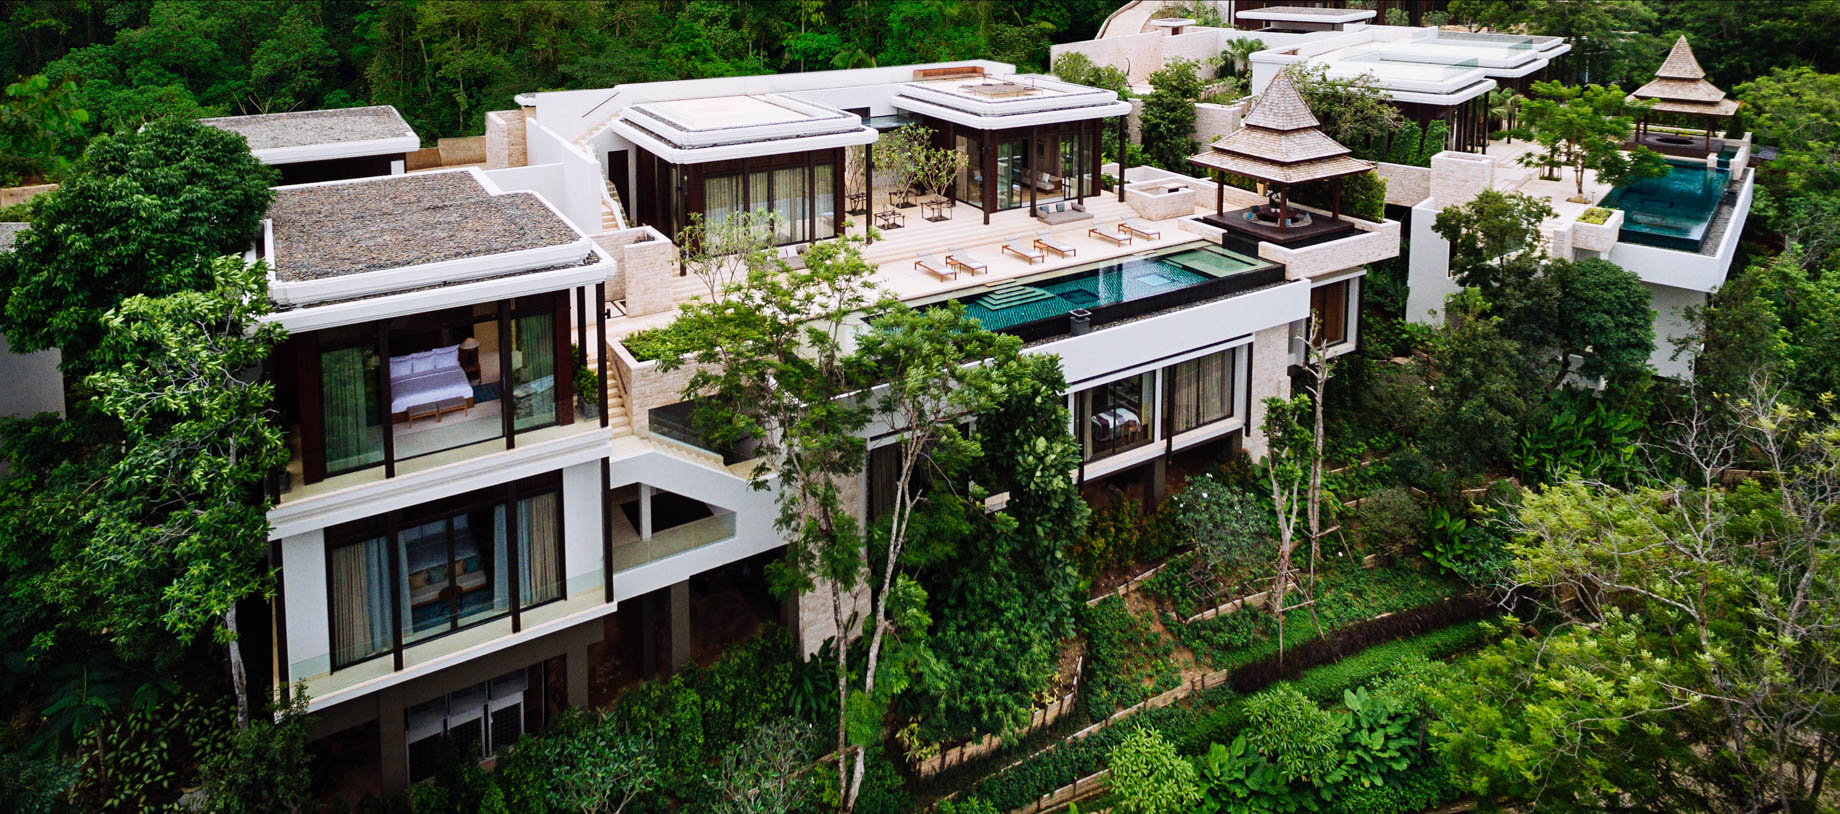 Anantara Layan Phuket Resort & Residences – Thailand – Upper Hill Residence Aerial View